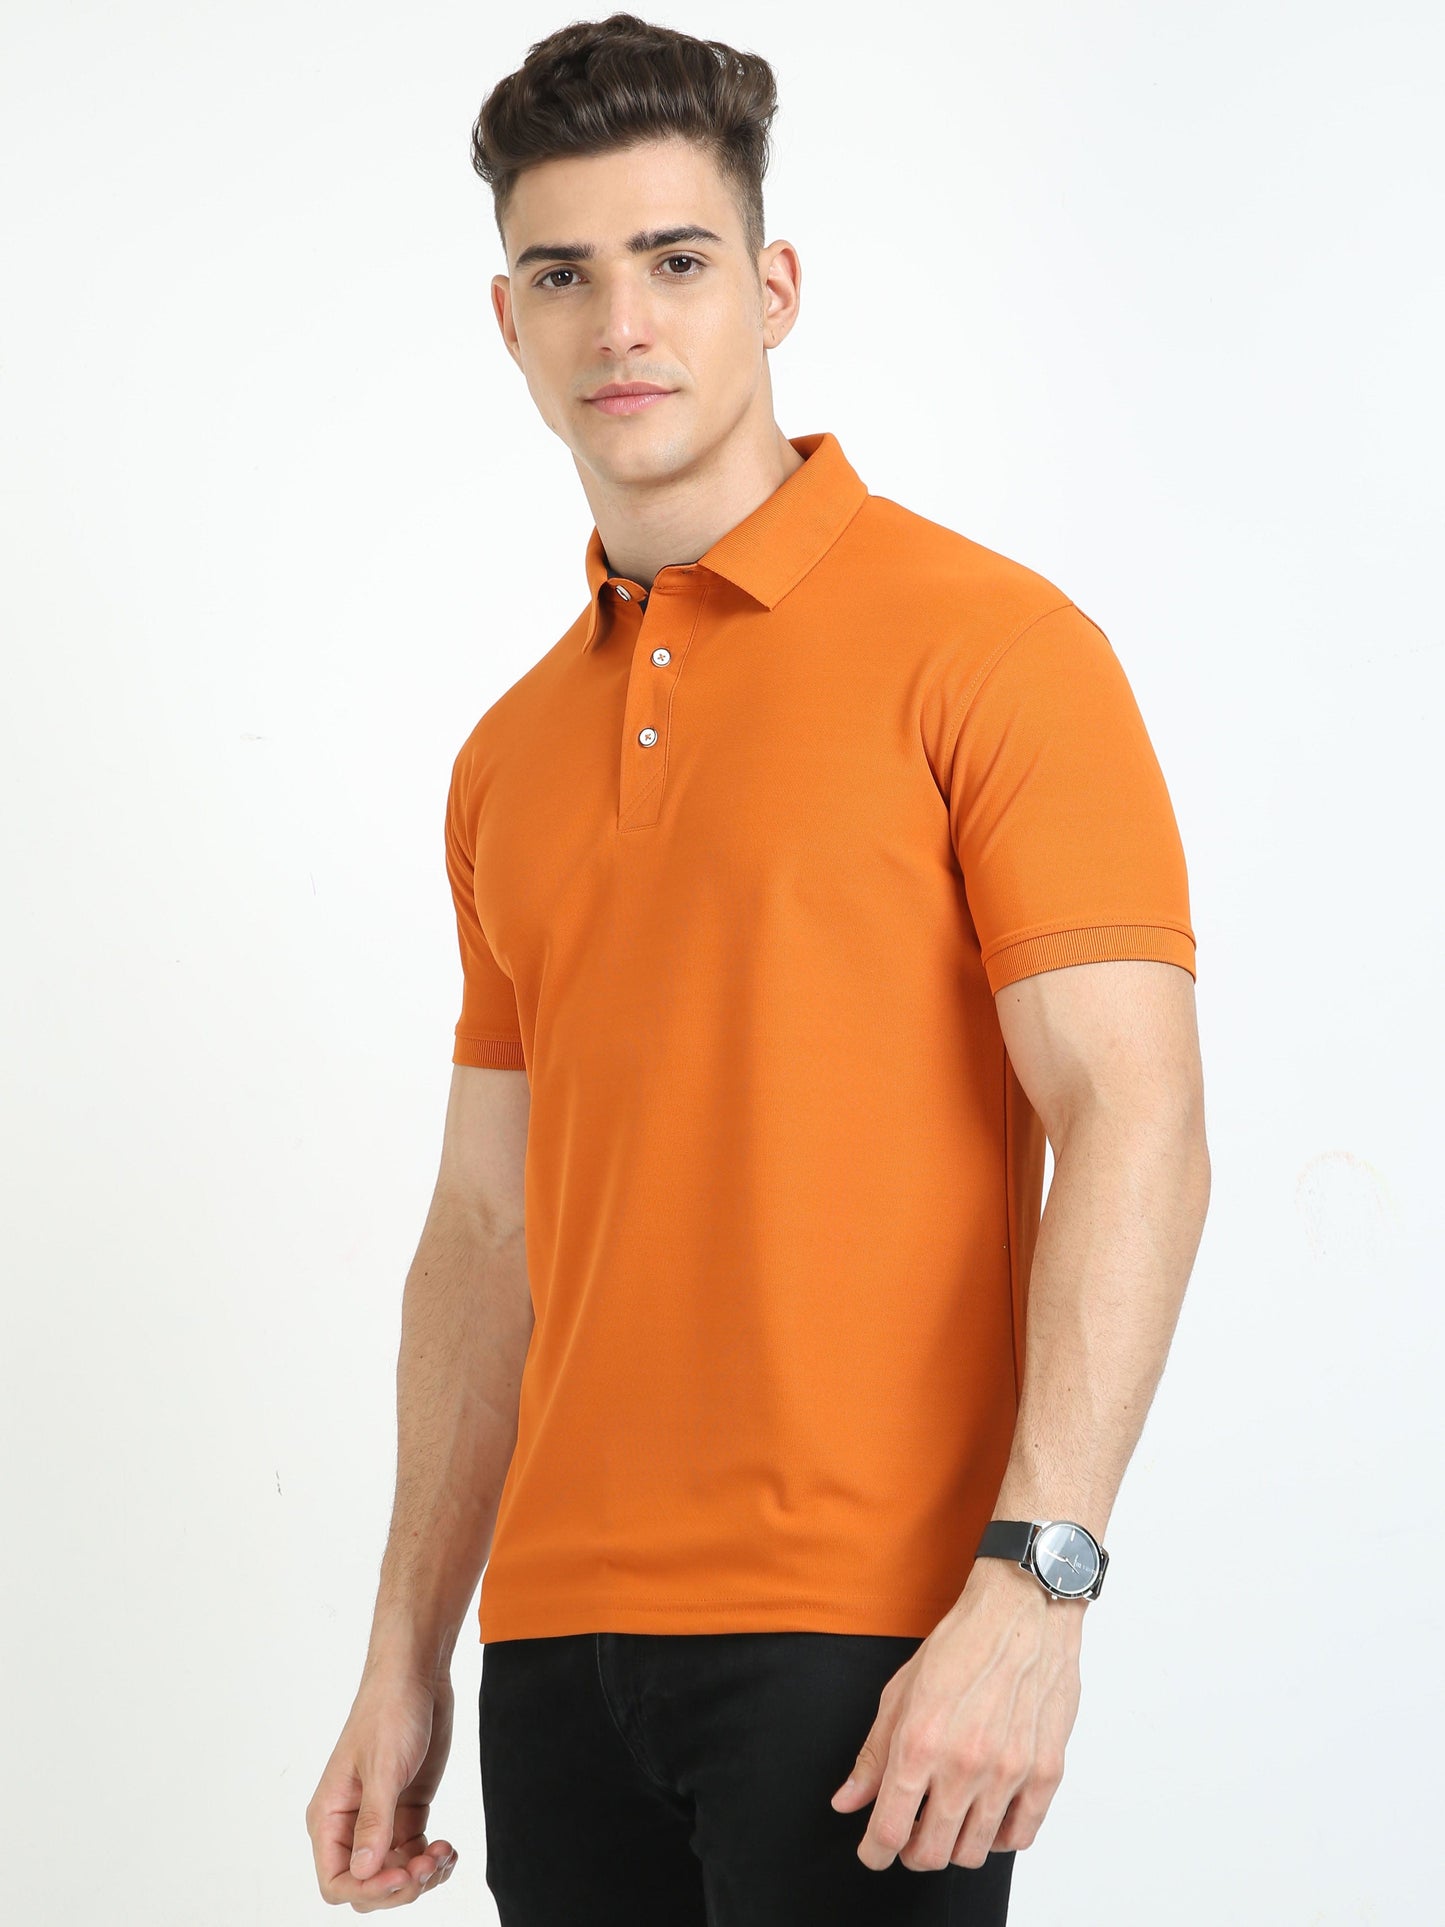 Woddy Orange Men's Polo T-shirt